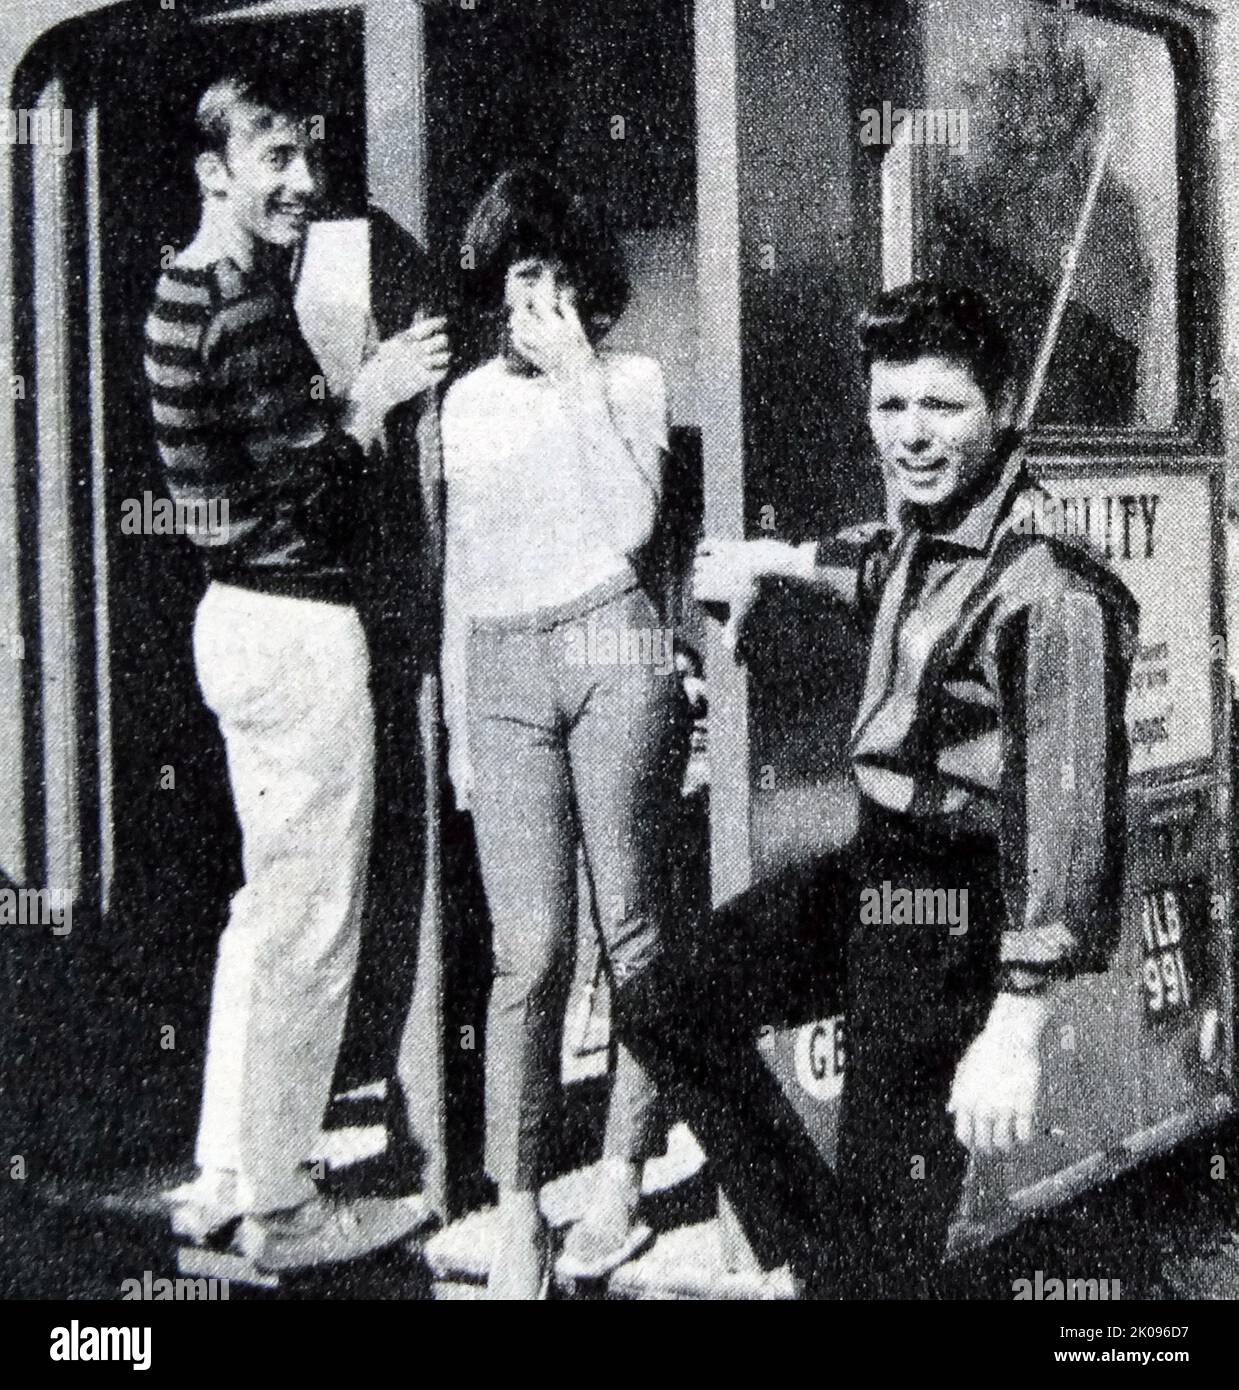 Cliff Richard in Summer Holiday, ein 1963 britischer CinemaScope- und Technicolor-Musikfilm. Cliff Richard. Sir Cliff Richard OBE (geboren am 14. Oktober 1940 in Harry Rodger Webb) ist ein englischer Sänger, der sowohl britische als auch barbadische Staatsbürgerschaft besitzt. Er hat weltweit mehr als 250 Millionen Schallplatten verkauft, was ihn zu einem der meistverkauften Musikkünstler aller Zeiten macht. Er hat einen Gesamtumsatz von über 21,5 Millionen Singles in Großbritannien und ist der drittmeistverkaufte Künstler in der Geschichte der britischen Singles Chart, hinter den Beatles und Elvis Presley. Stockfoto